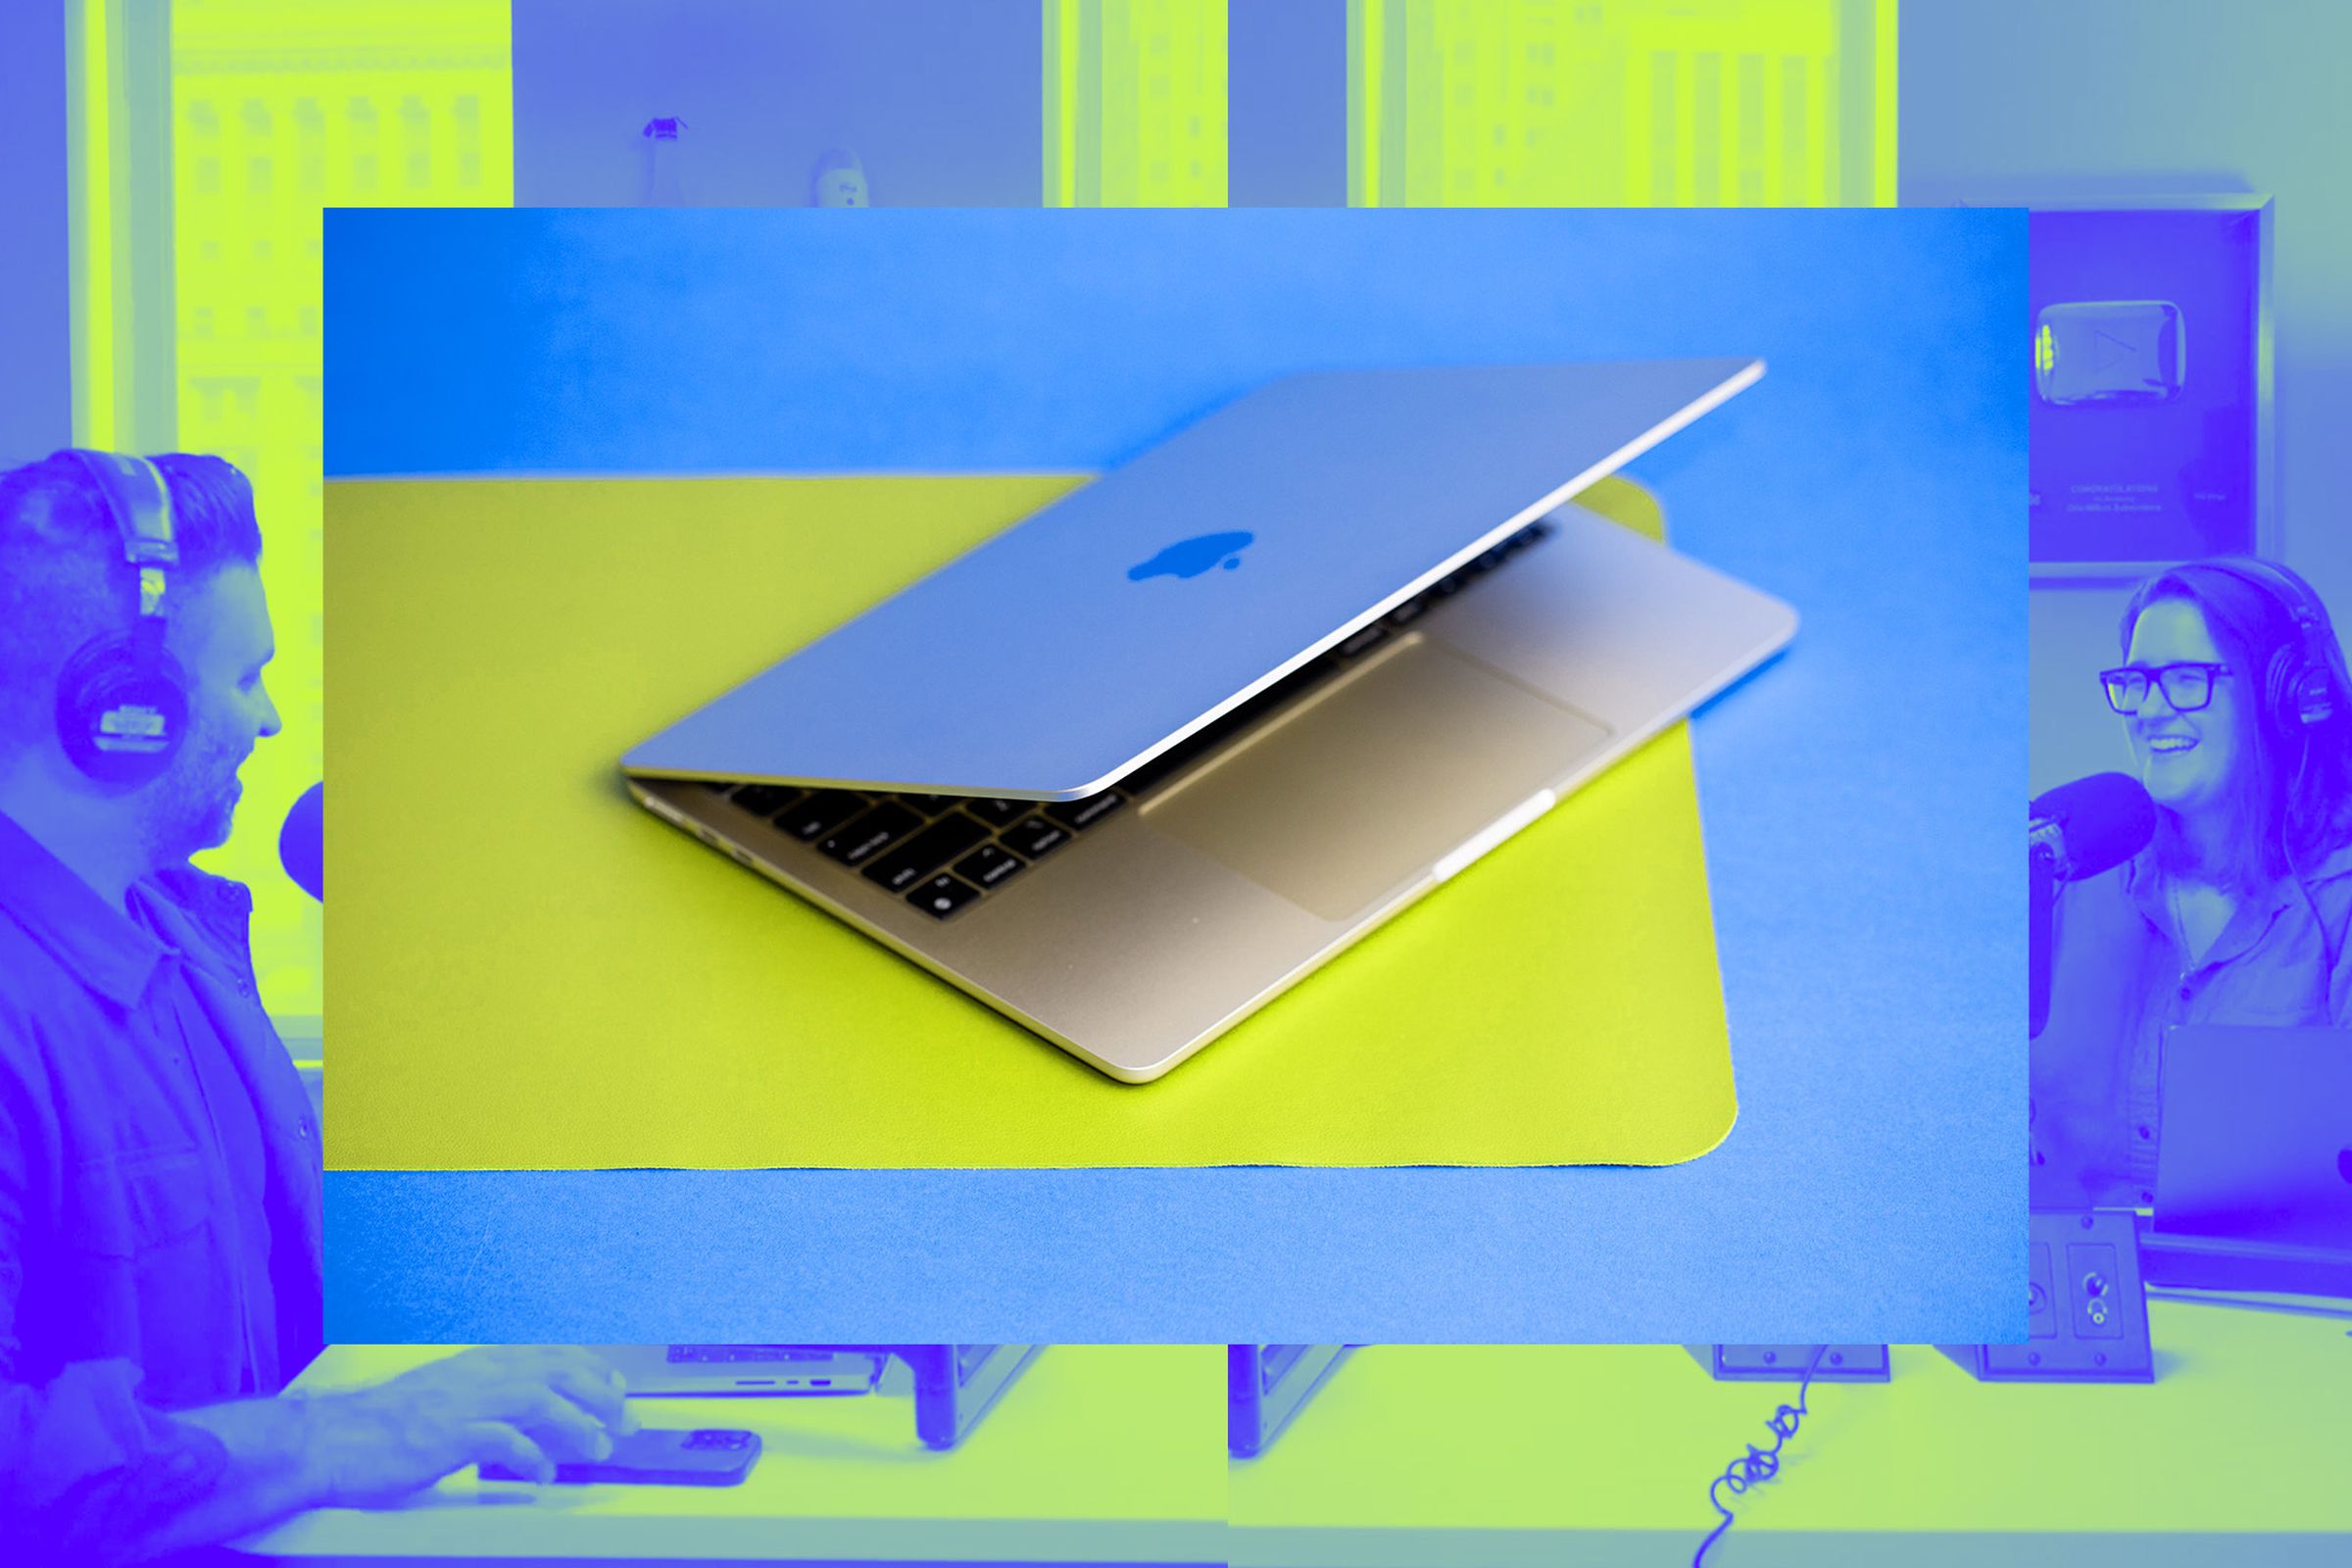 MacBook Air open on yellow desk